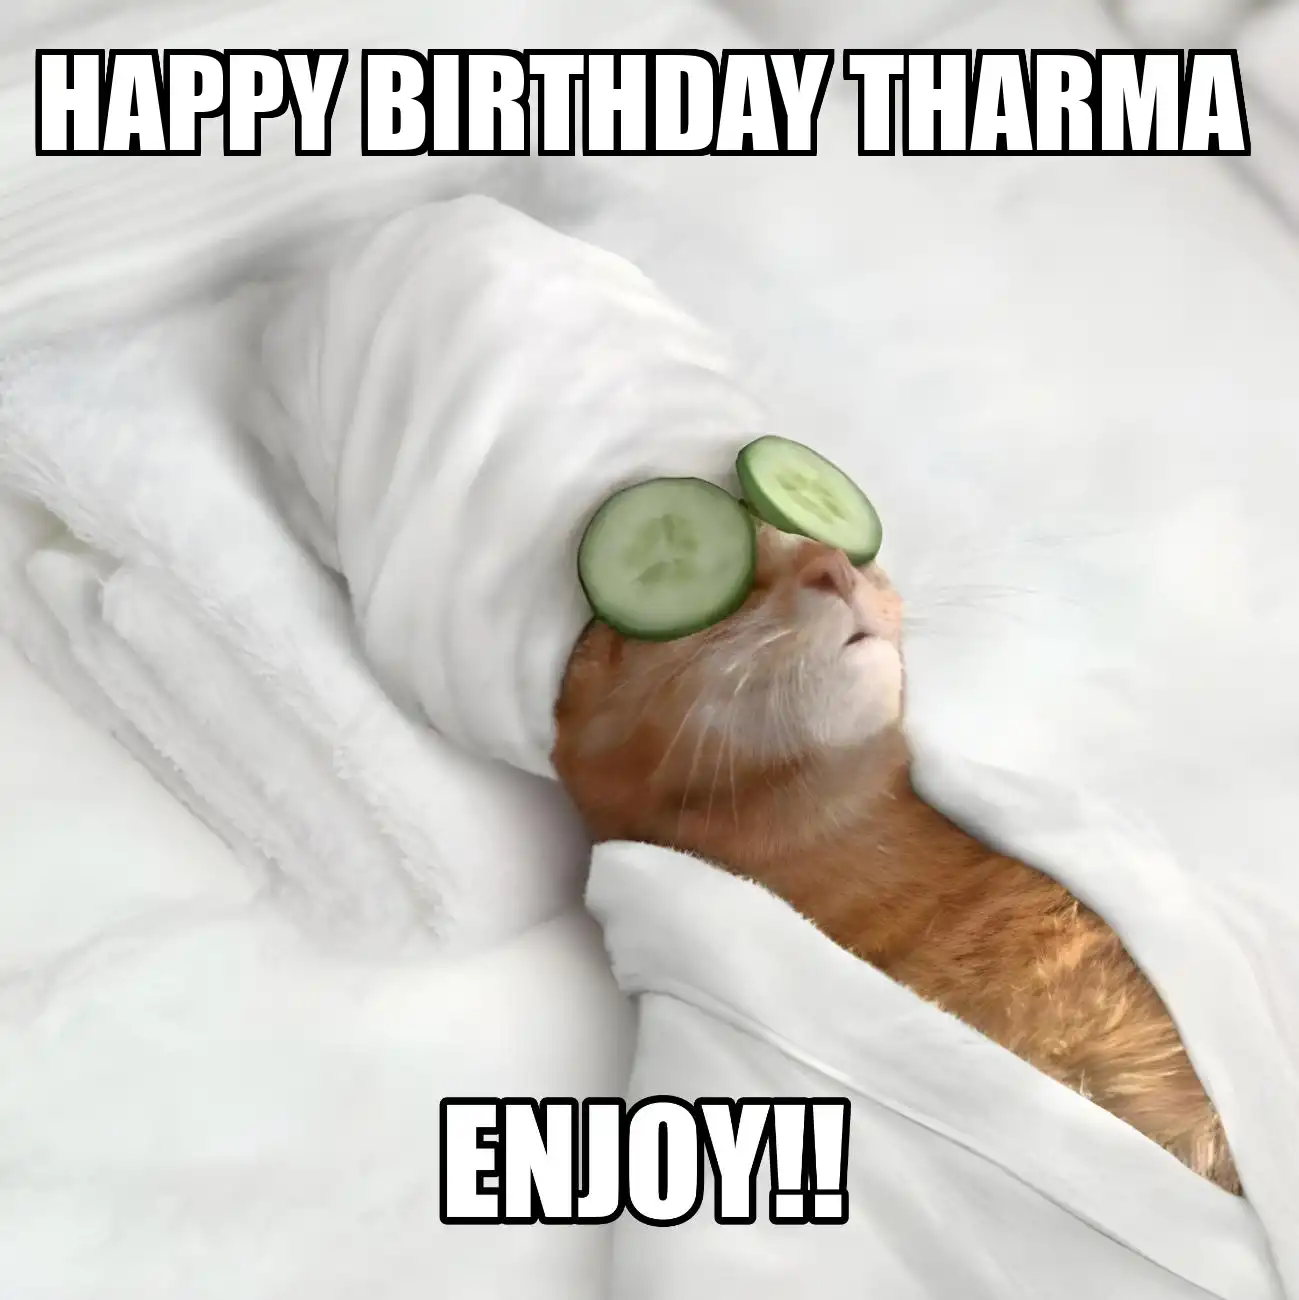 Happy Birthday Tharma Enjoy Cat Meme